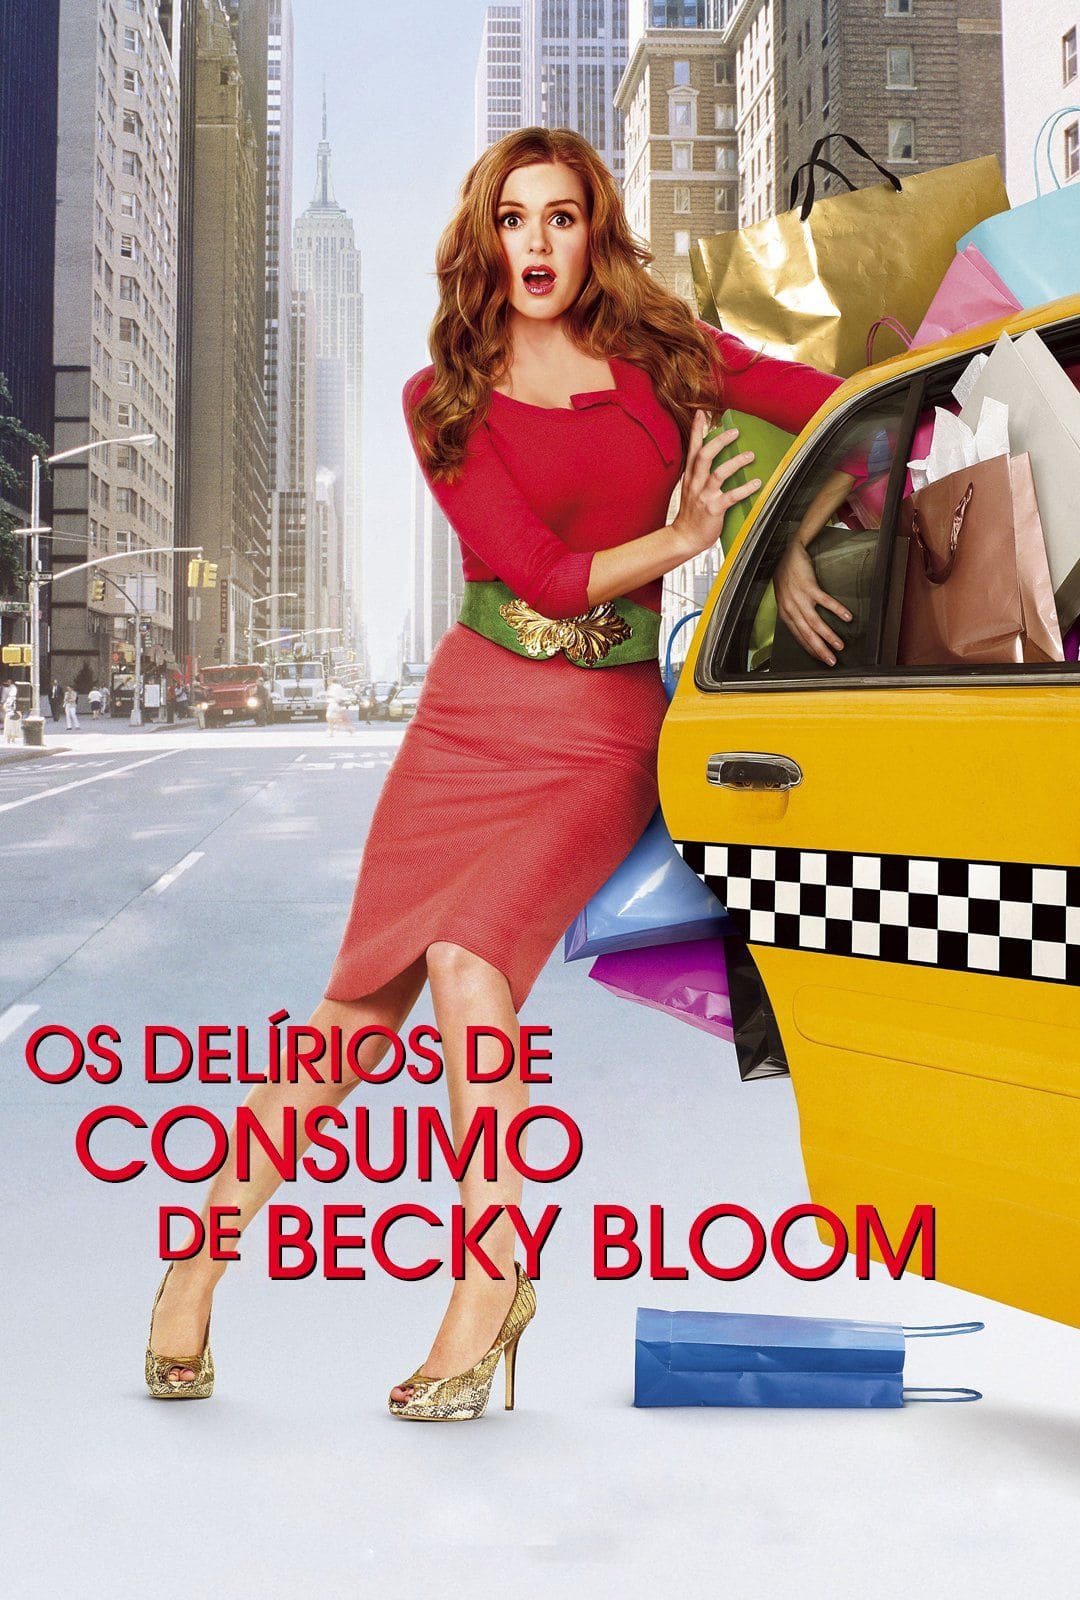 Filme sobre moda: Os delírios de consumo de Becky Bloom